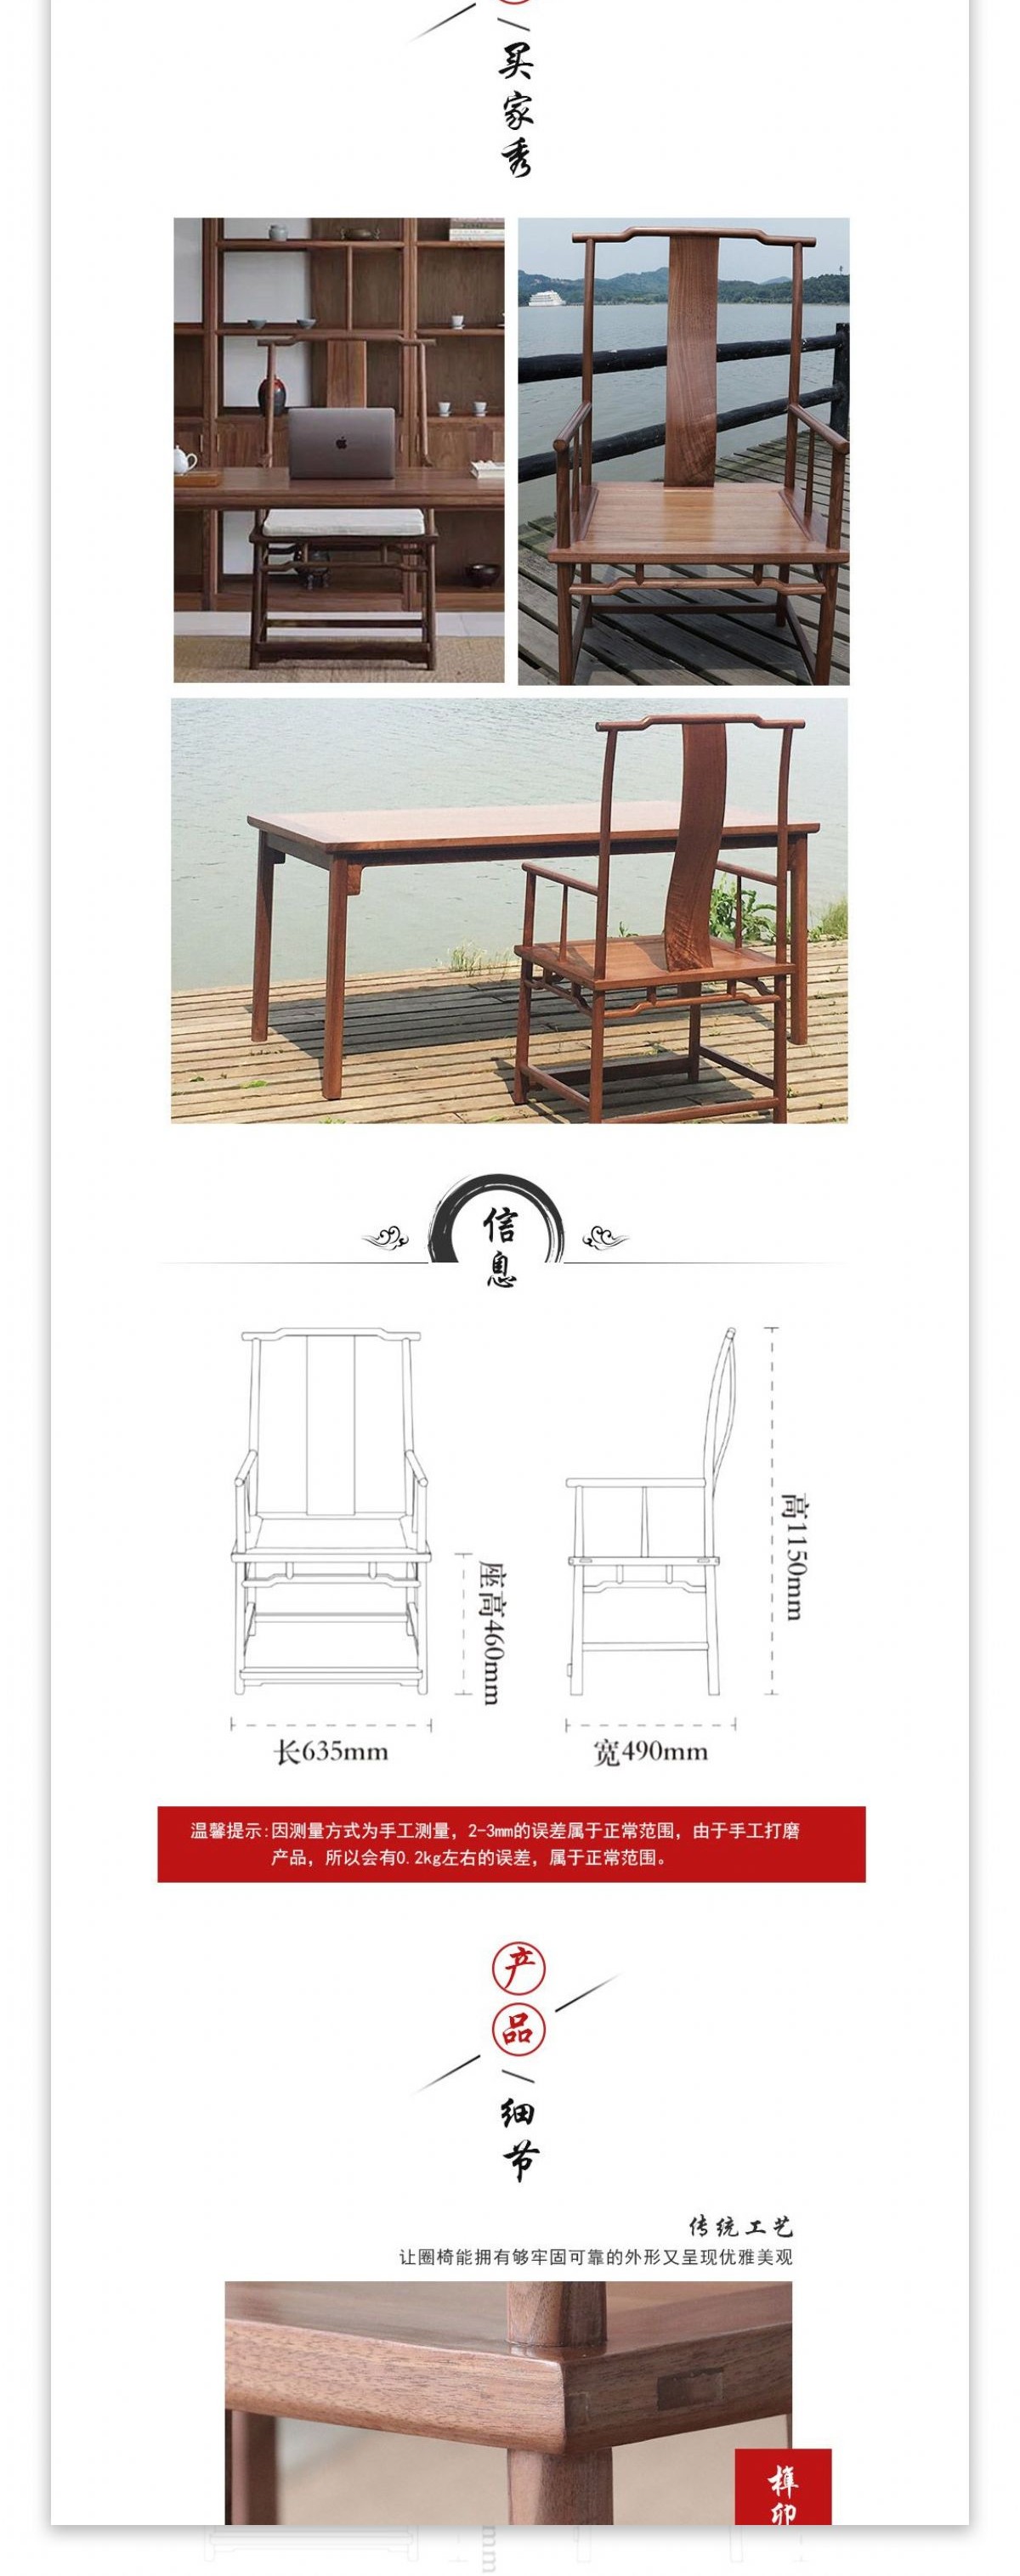 椅子详情页传统木艺简约中国风日用家居家具